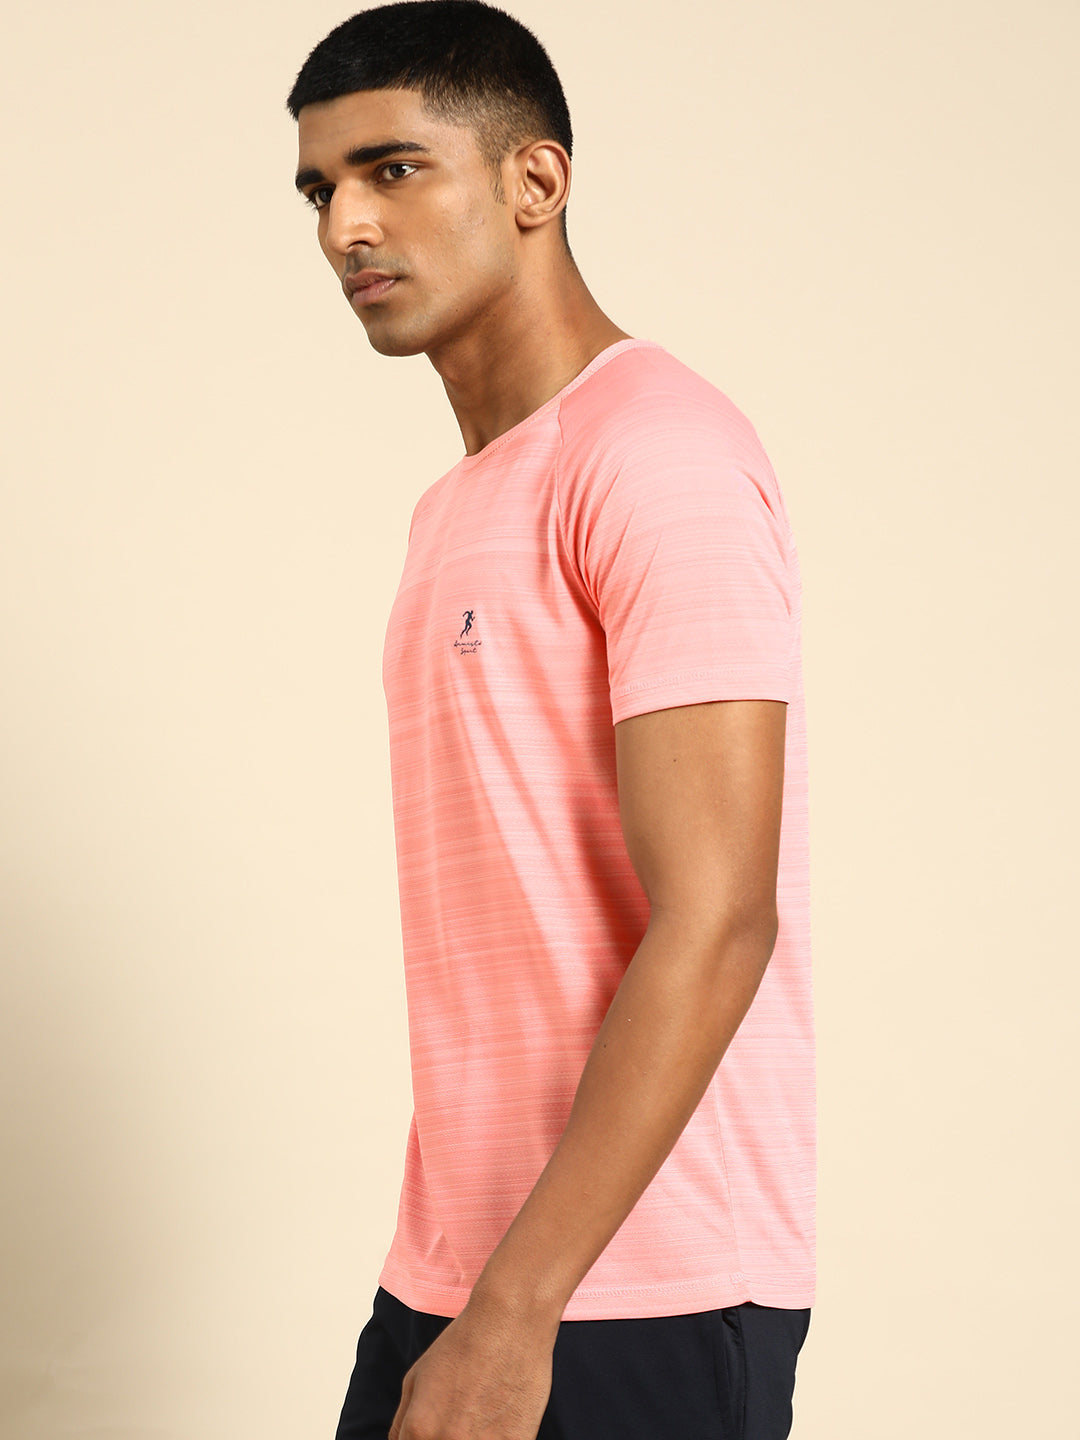 128 Textured Dri-Fit Sports Tshirt I Pink